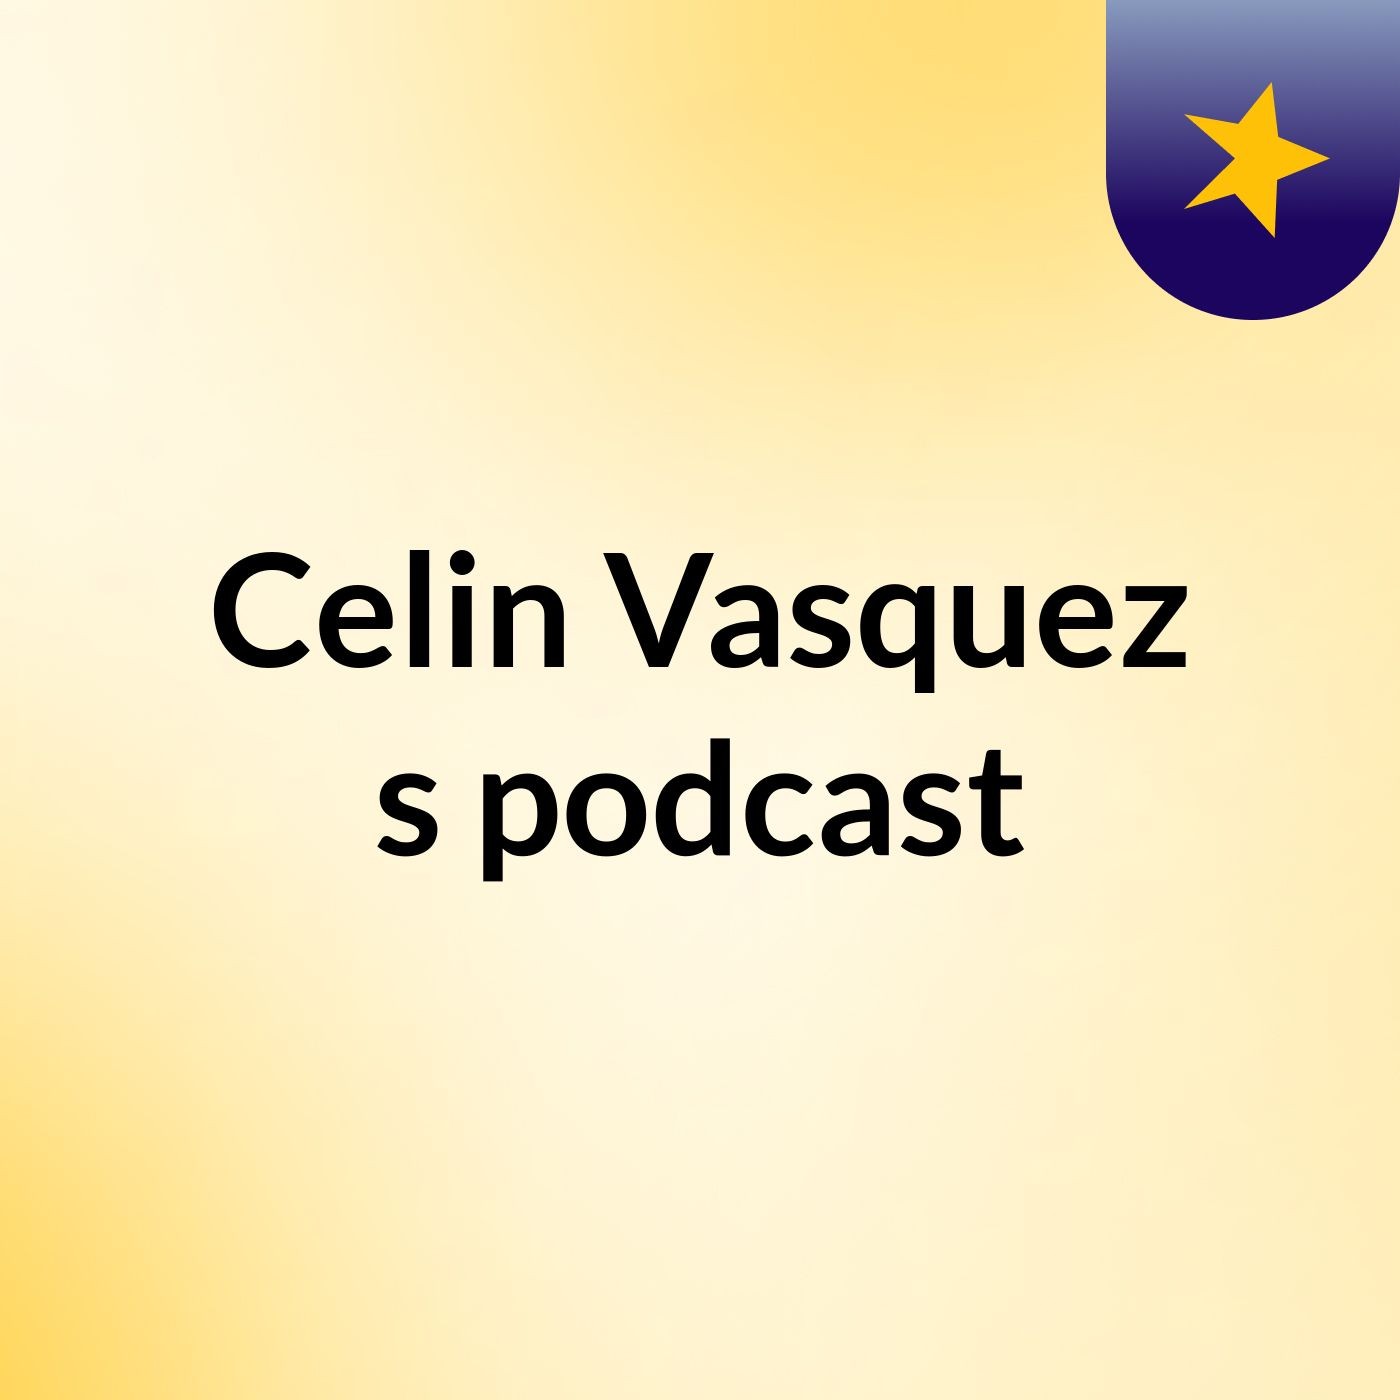 Celin Vasquez's podcast